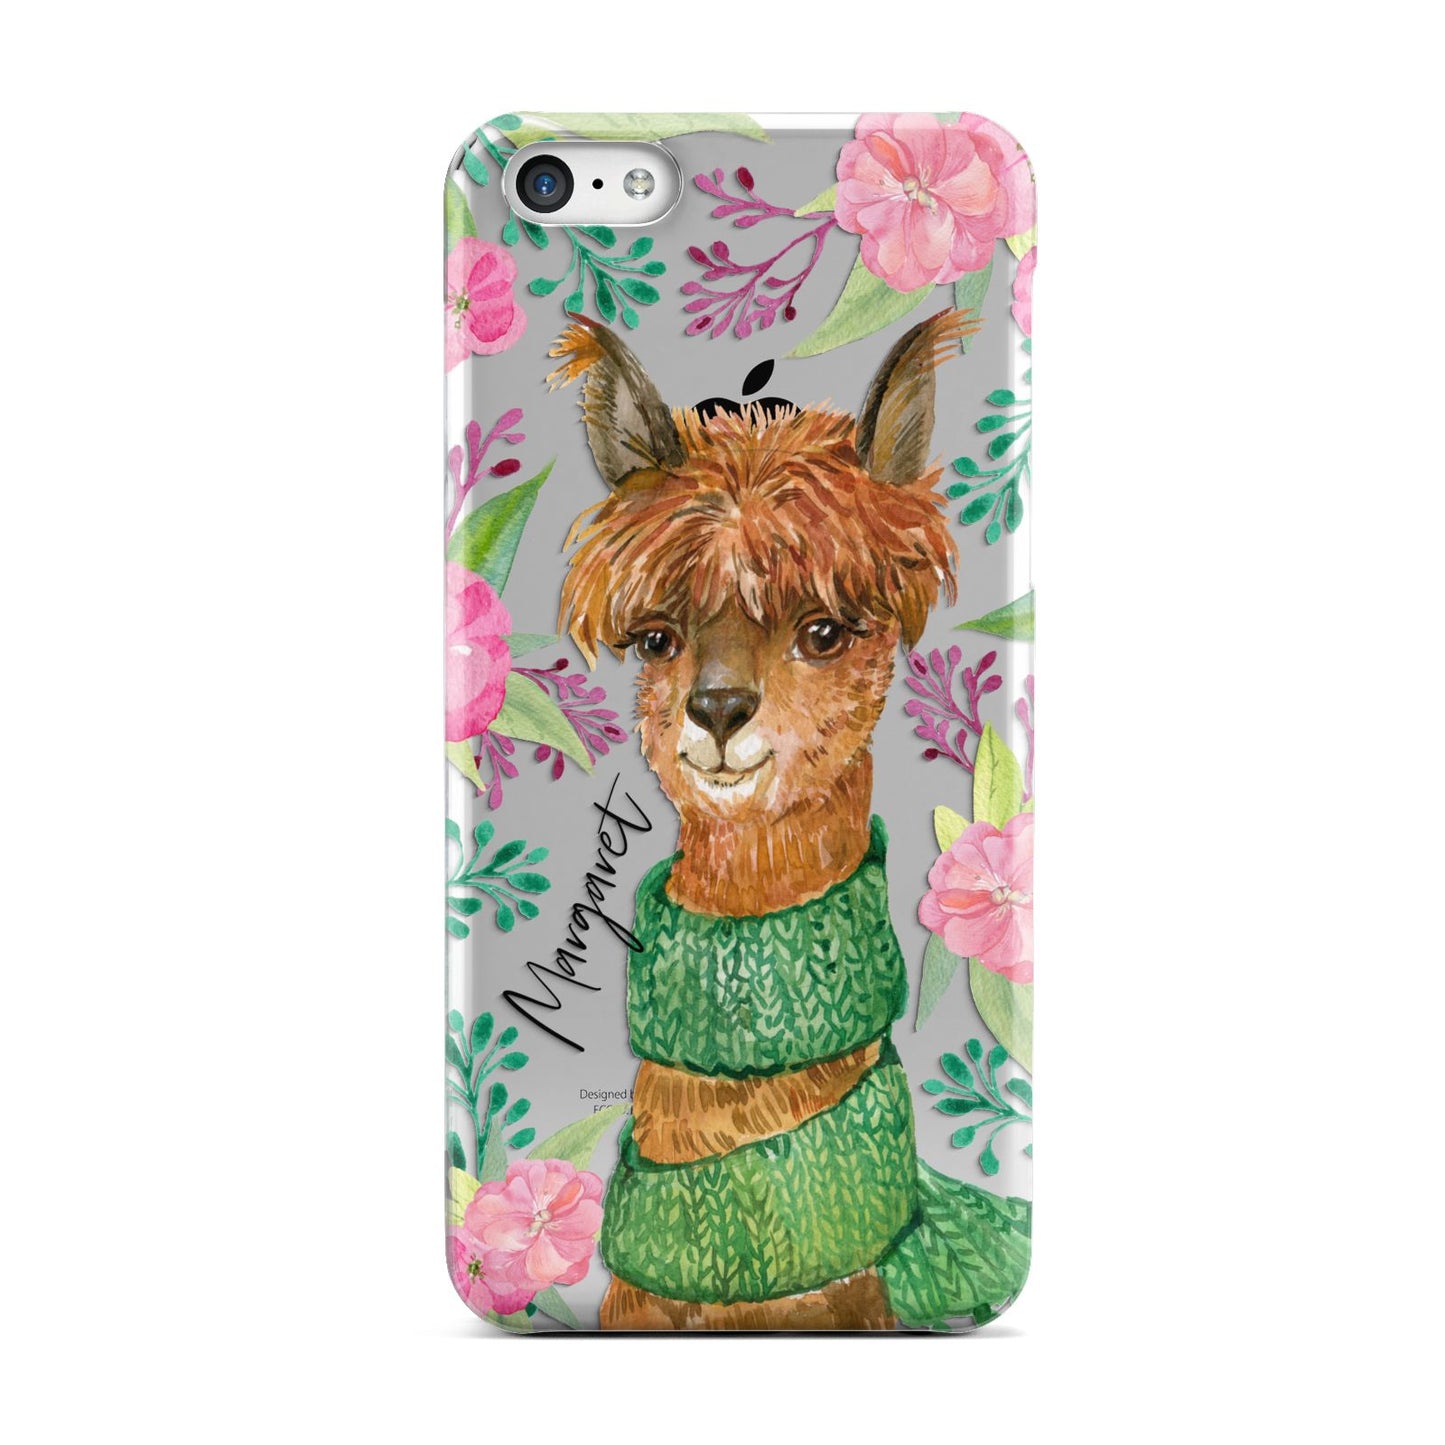 Personalised Alpaca Apple iPhone 5c Case